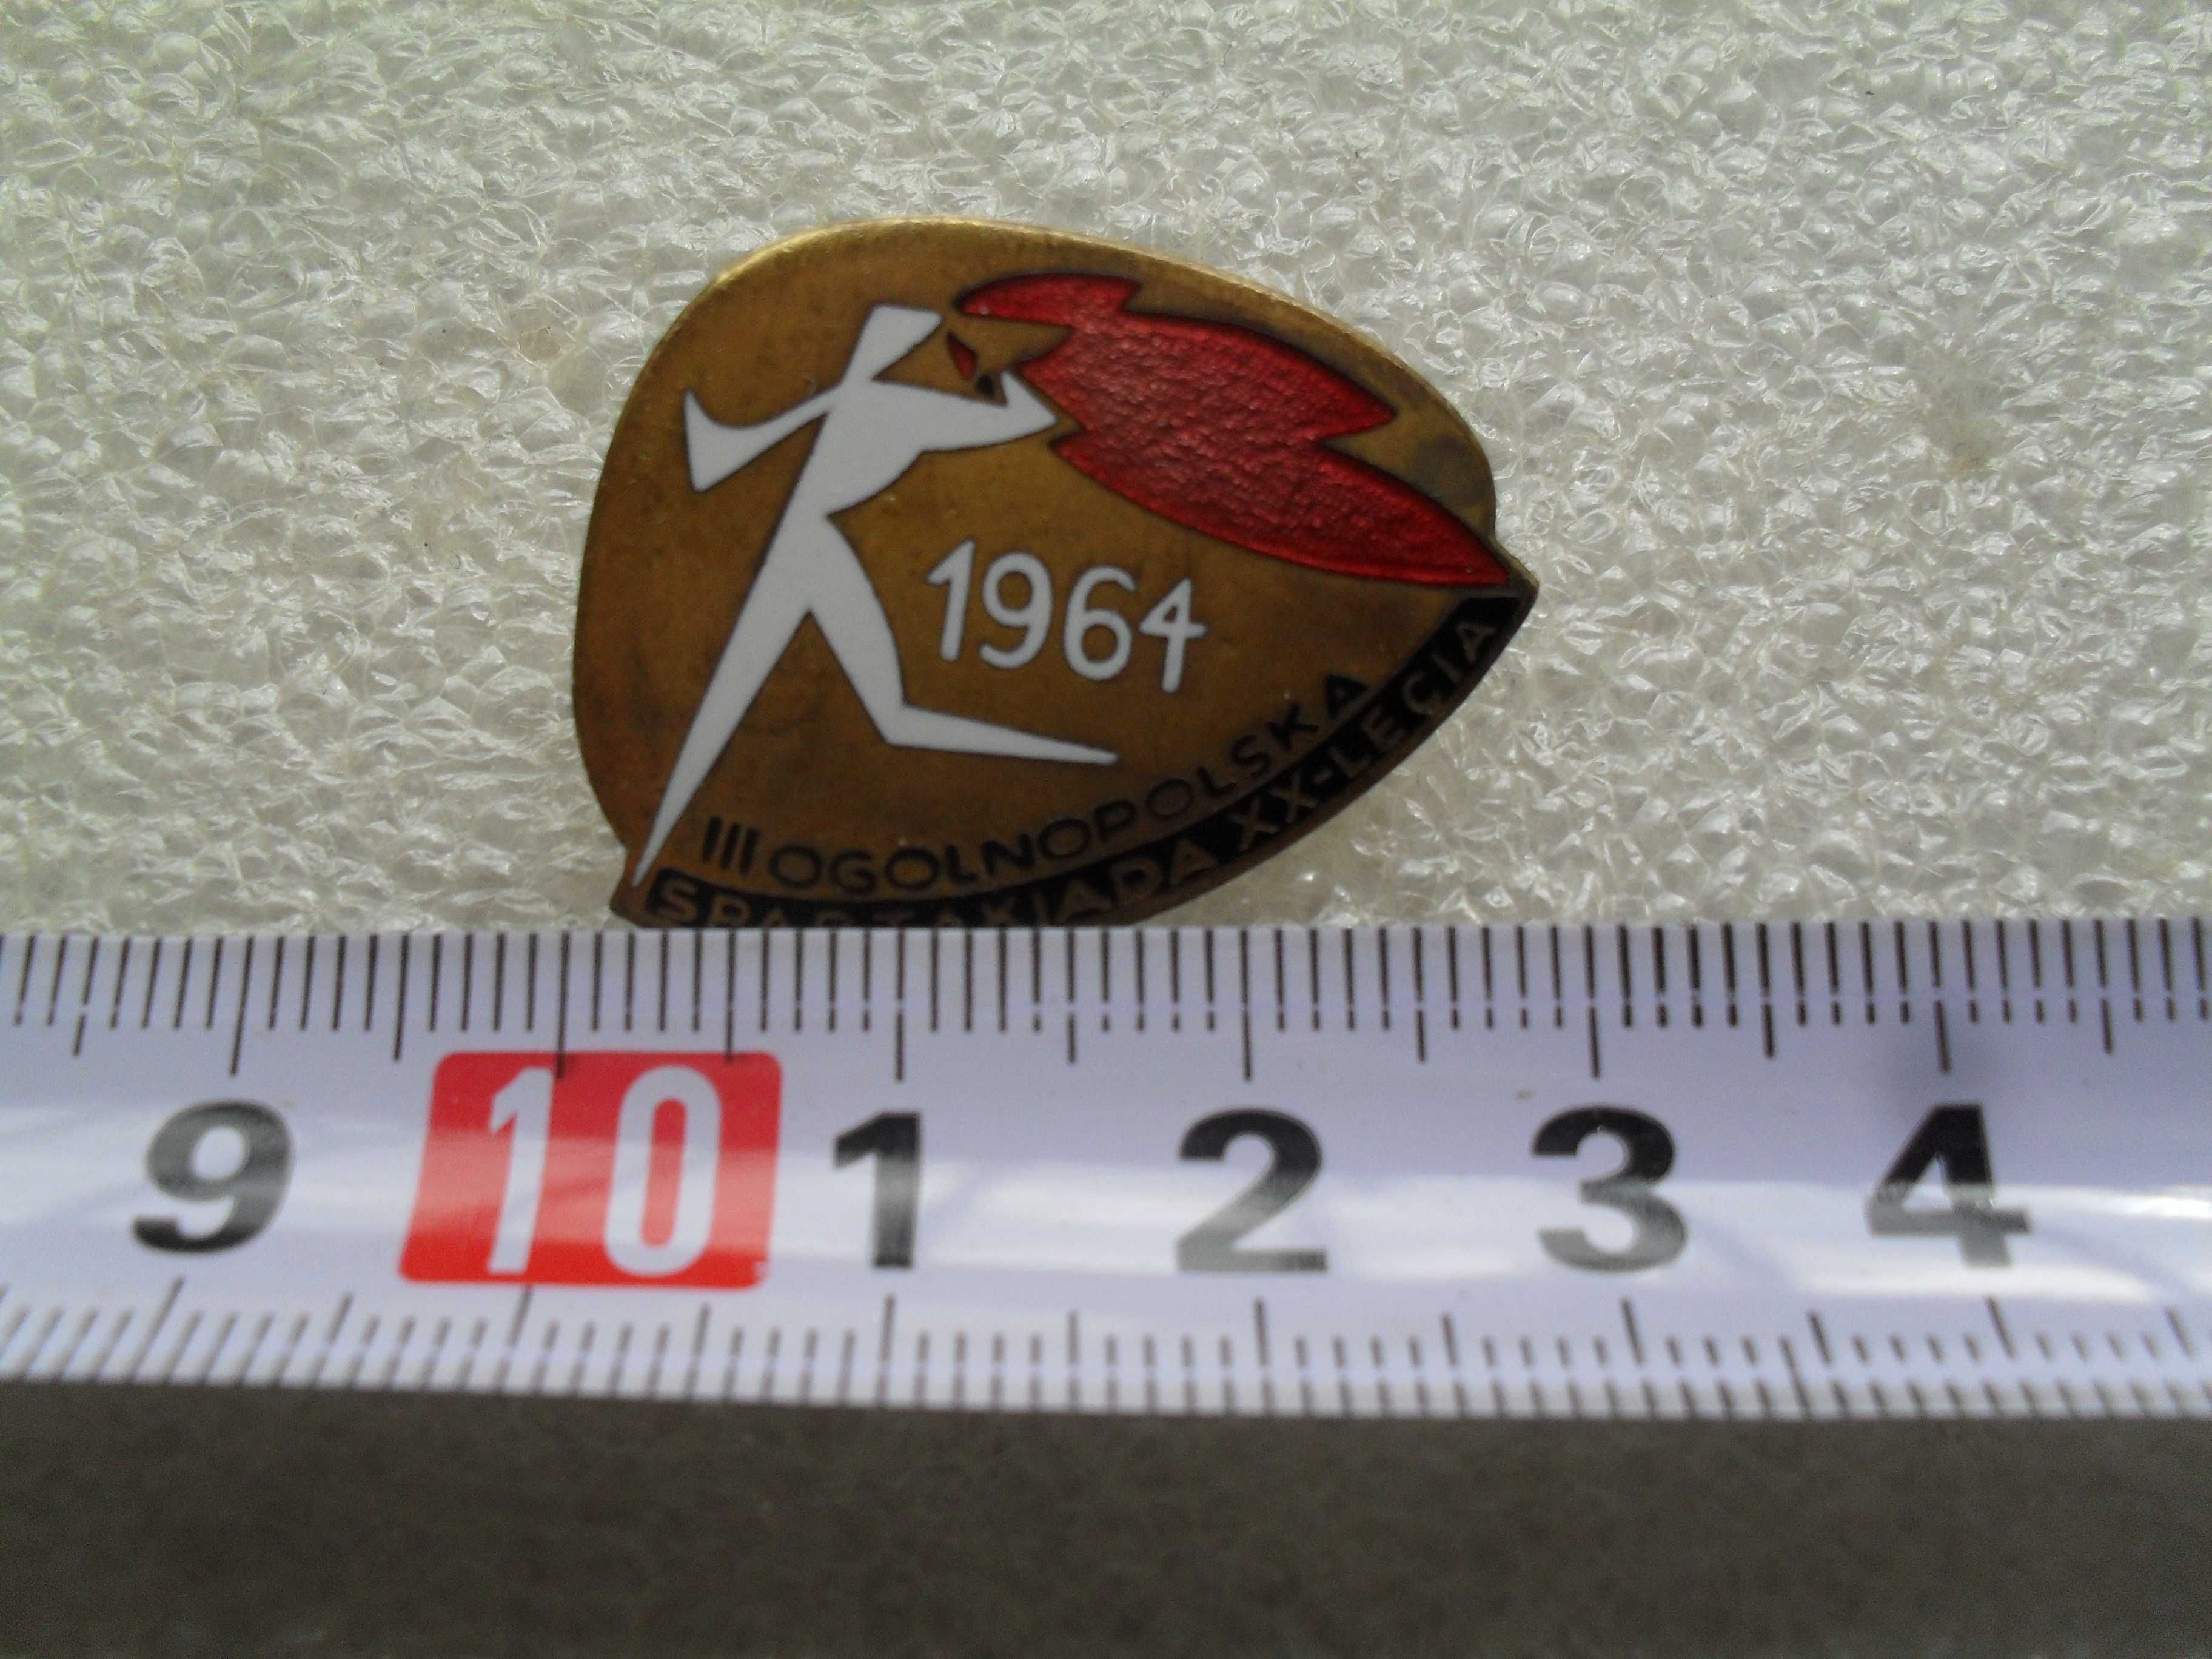 Odznaka III Ogólnopolska Spartakiada XX lecia 1964